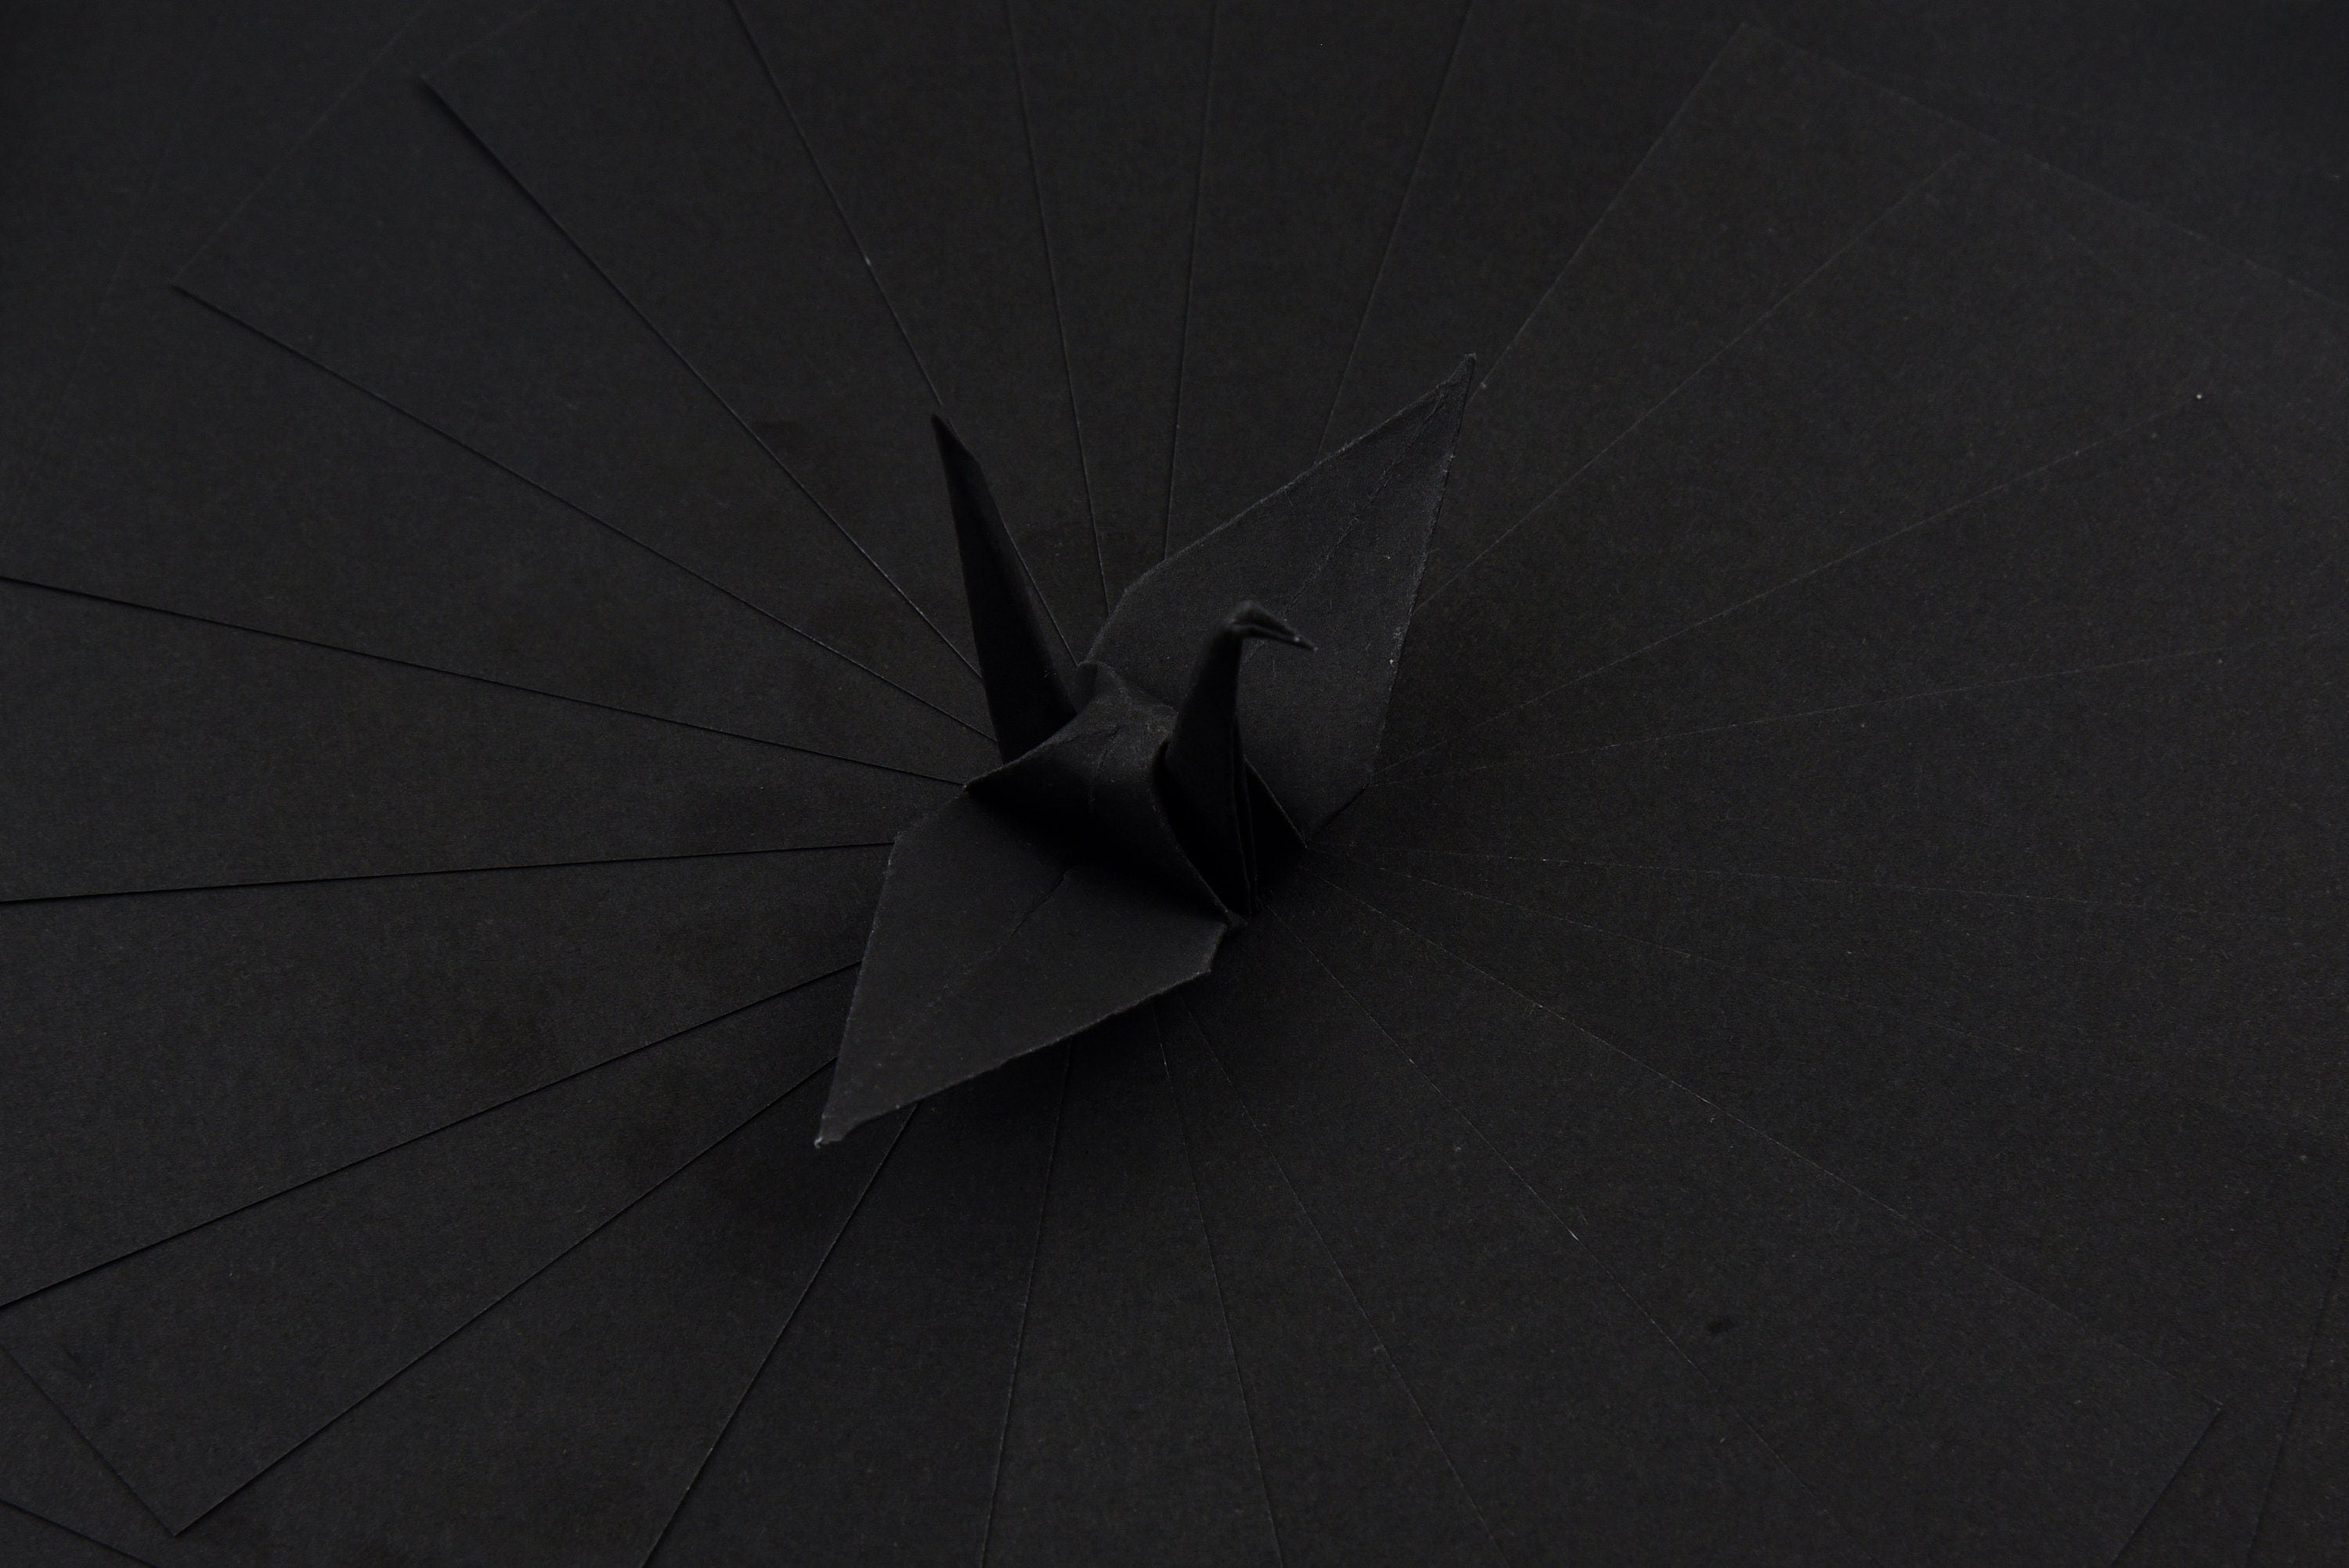 100 hojas de papel de origami negro - 6x6 pulgadas - Paquete de papel cuadrado para plegado, grullas de origami y decoración - S11